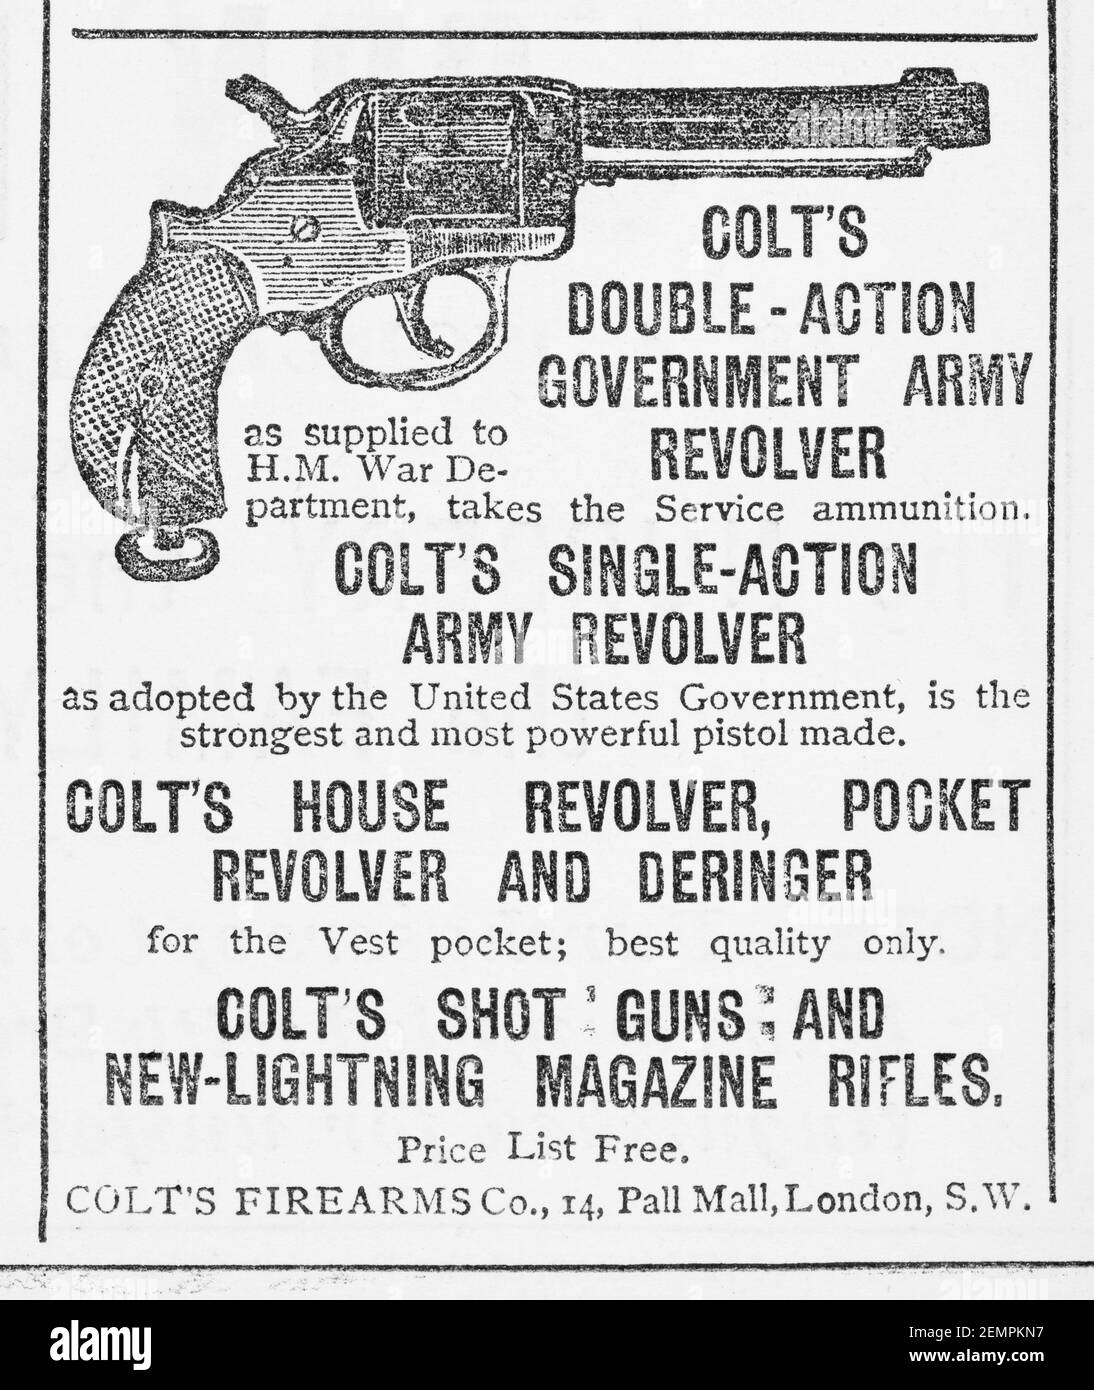 Antiguo anuncio de la pistola de mano de Colt en el Reino Unido (1887). Antes de los estándares de publicidad y cuando las armas de fuego están fácilmente disponibles. Historia de la publicidad, los anuncios antiguos, la historia de las armas Foto de stock